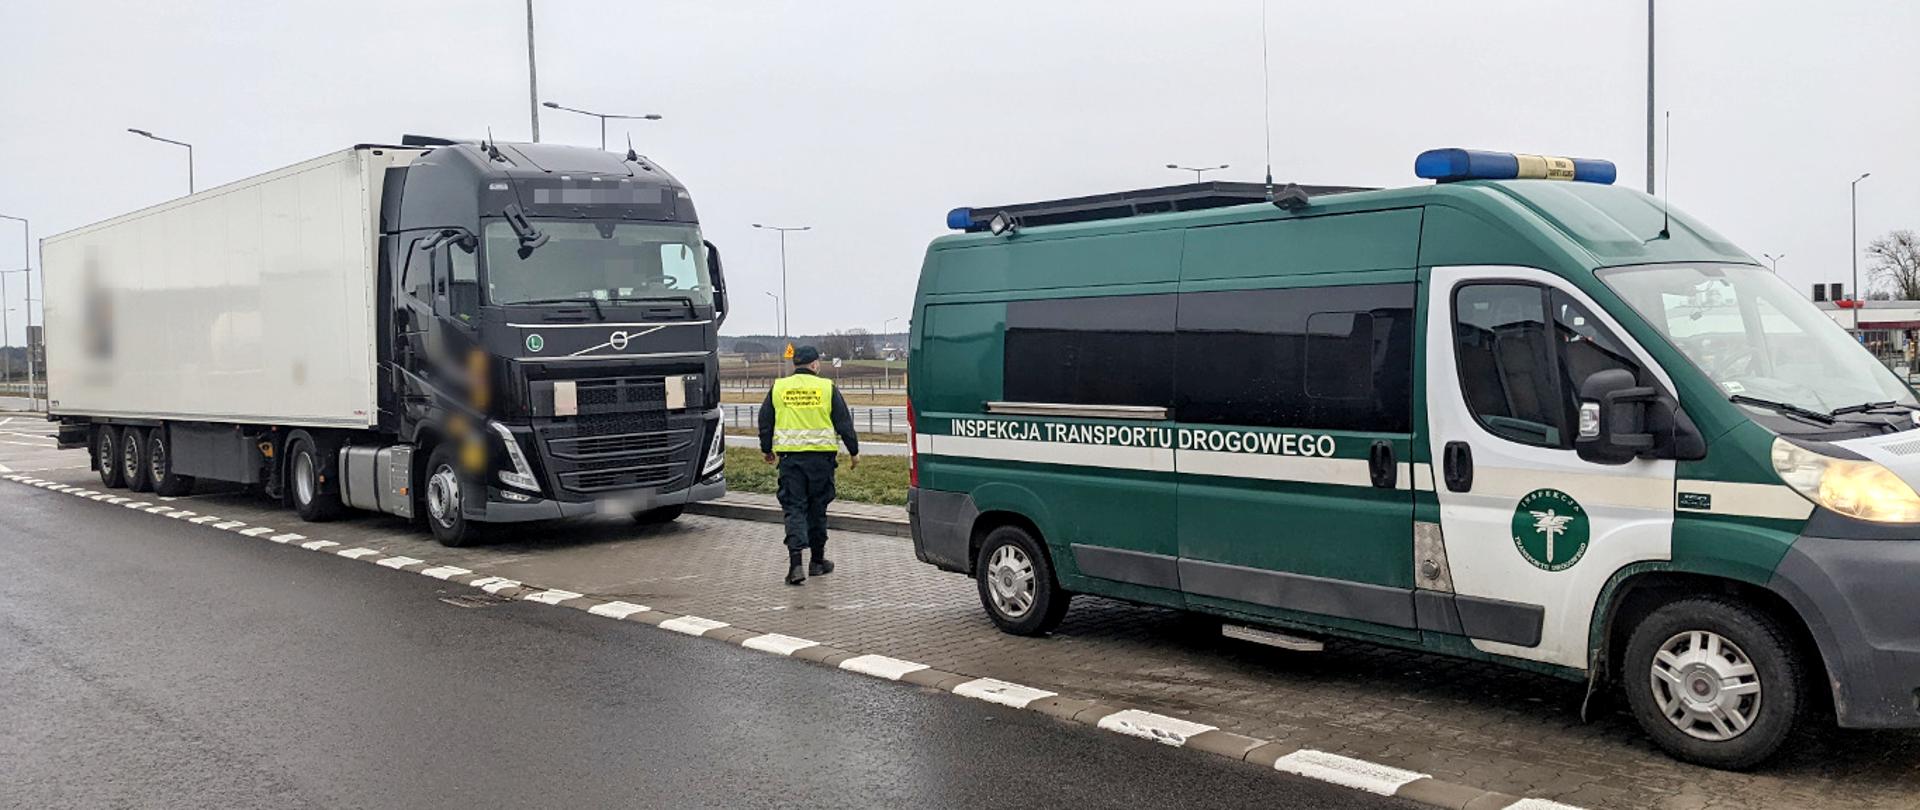 Inspektorzy podczas działań kontrolnych na S61 zatrzymali w Rudnikach (podlaskie) kierowcę ciężarówki, którą realizowany był międzynarodowy przewóz na trasie z Rosji do Francji